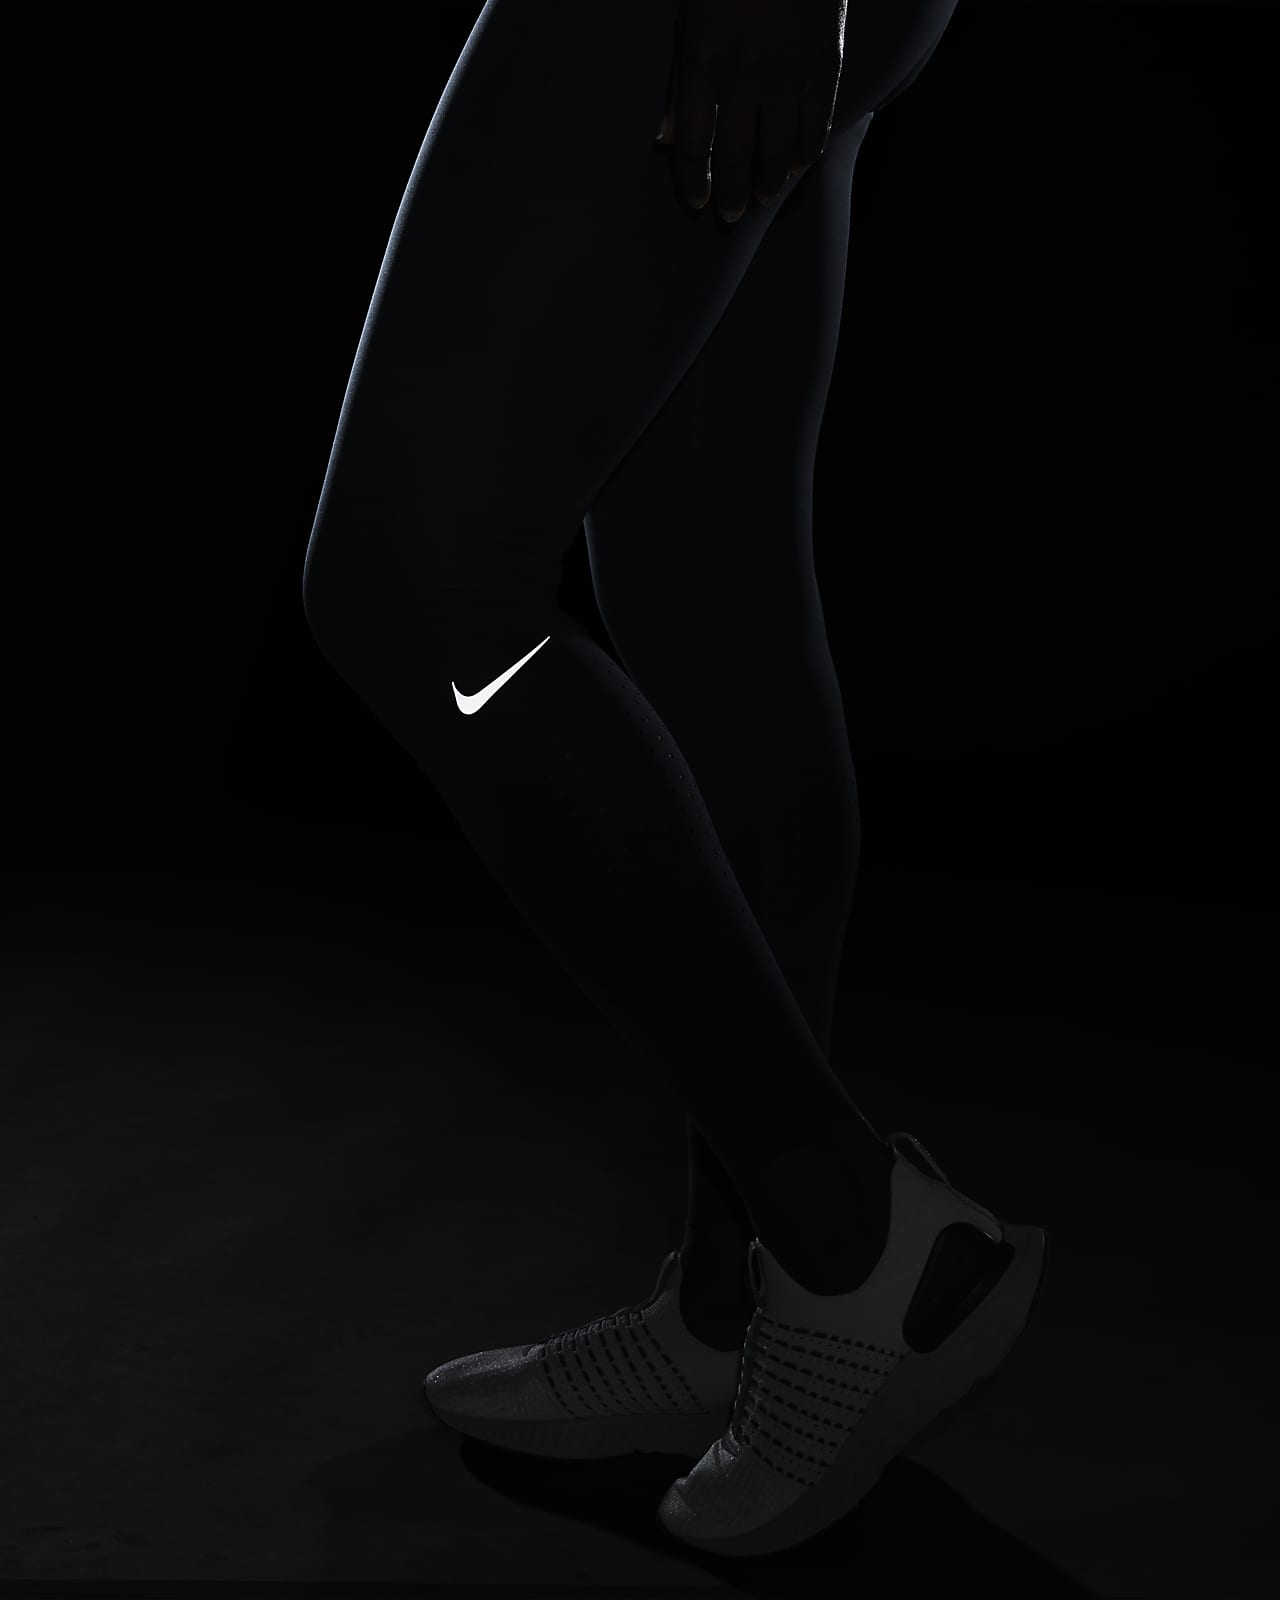 Nike Epic Luxe Women's Mid-Rise Full-Length Leggings.